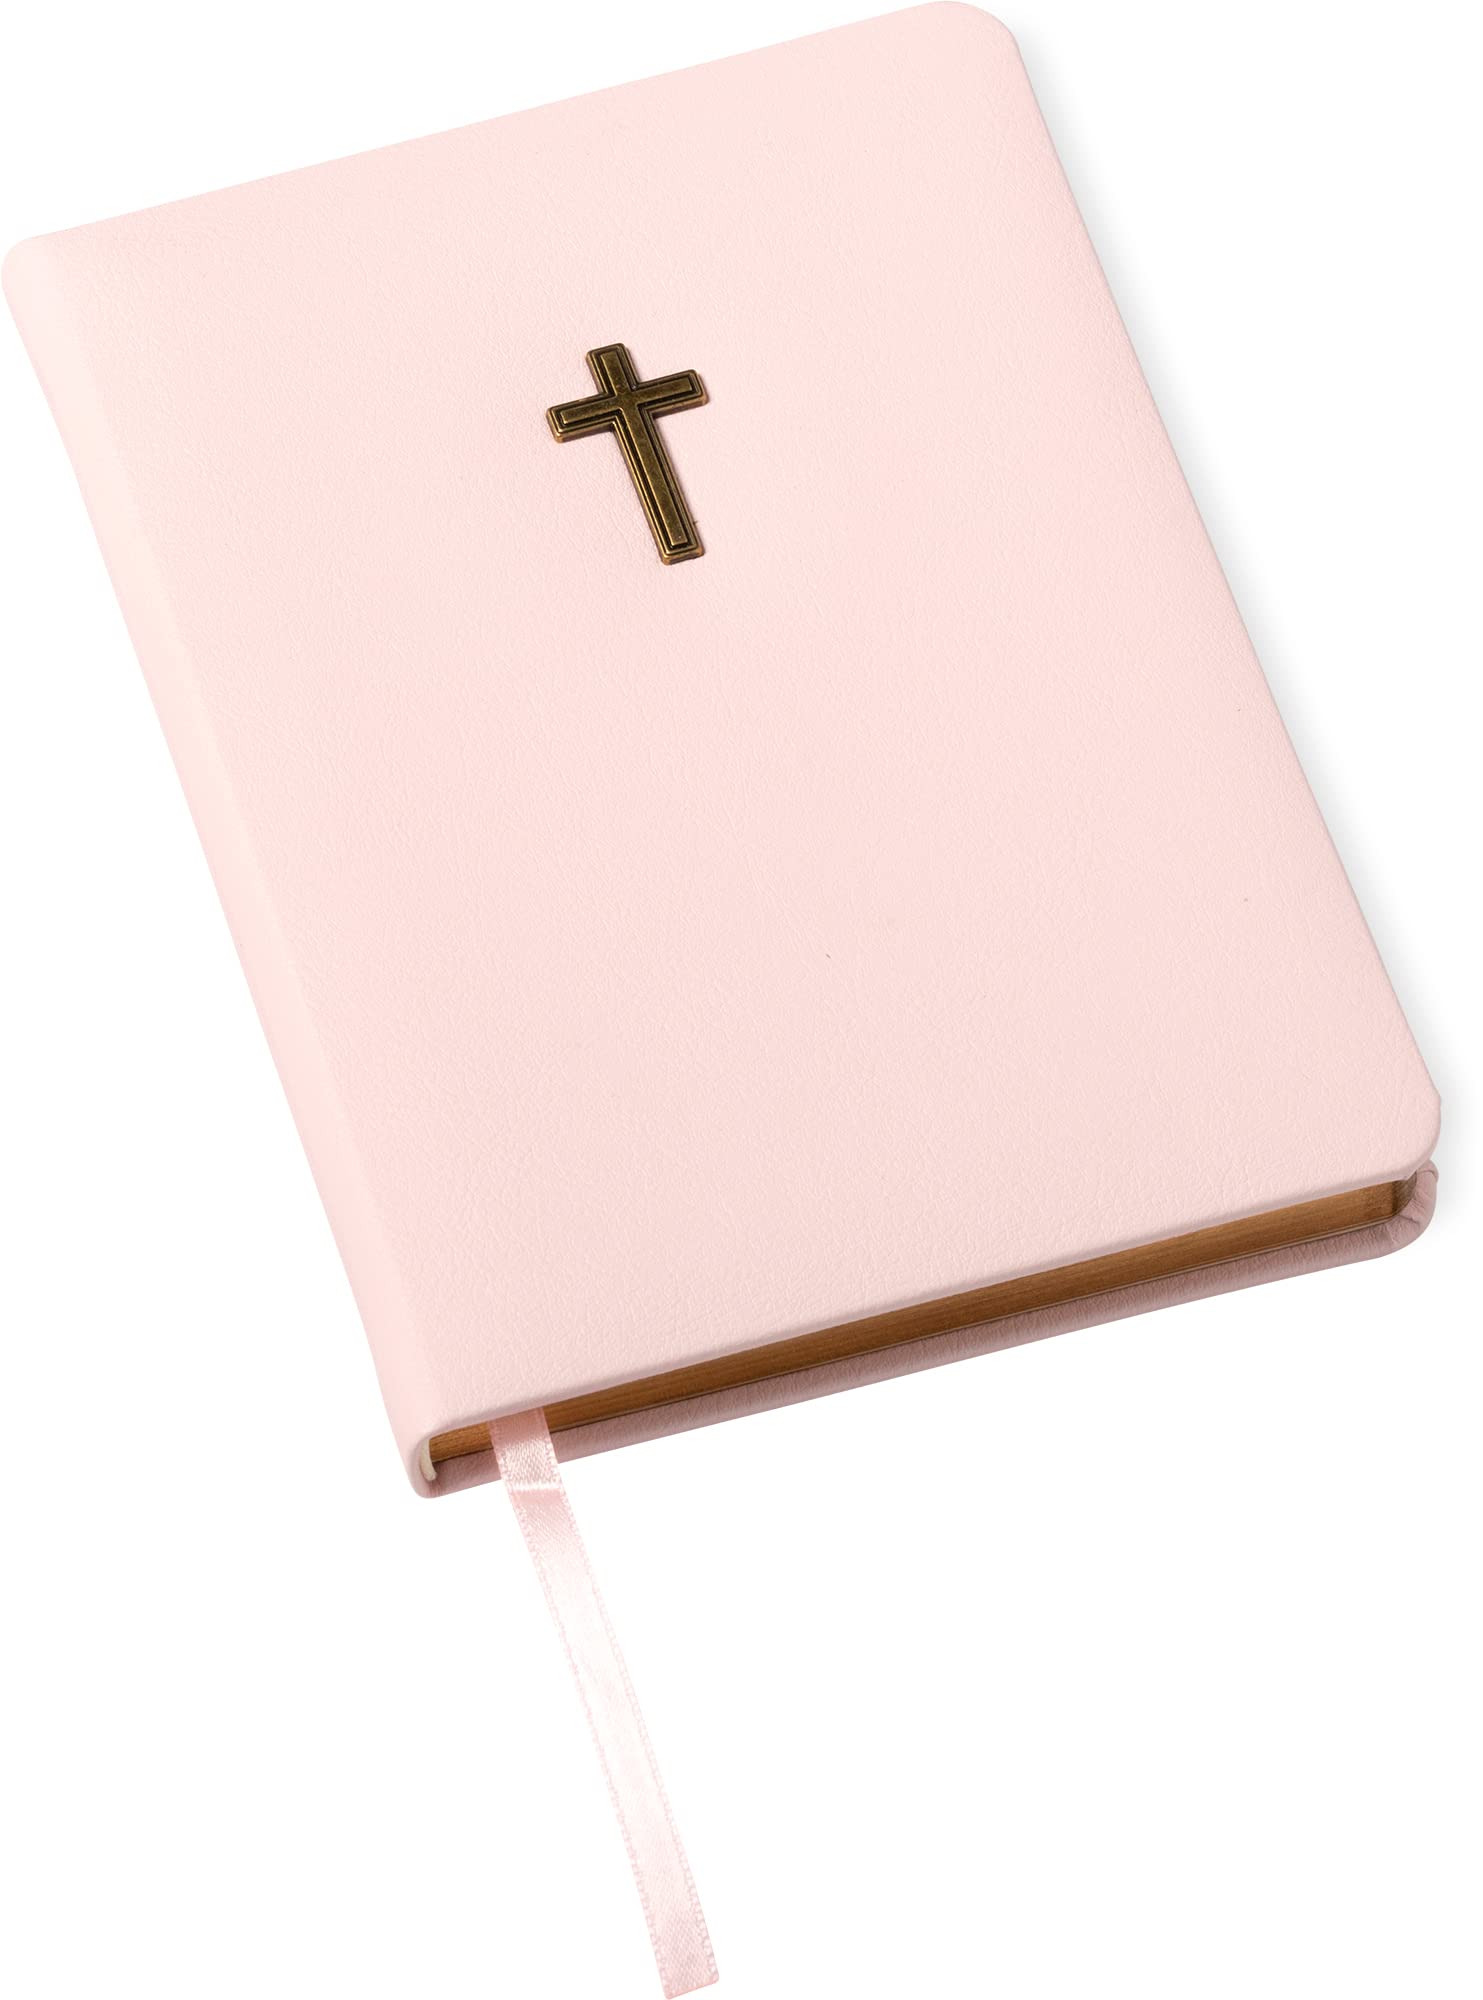 Cross Emblem on Eccolo Journal Notebook